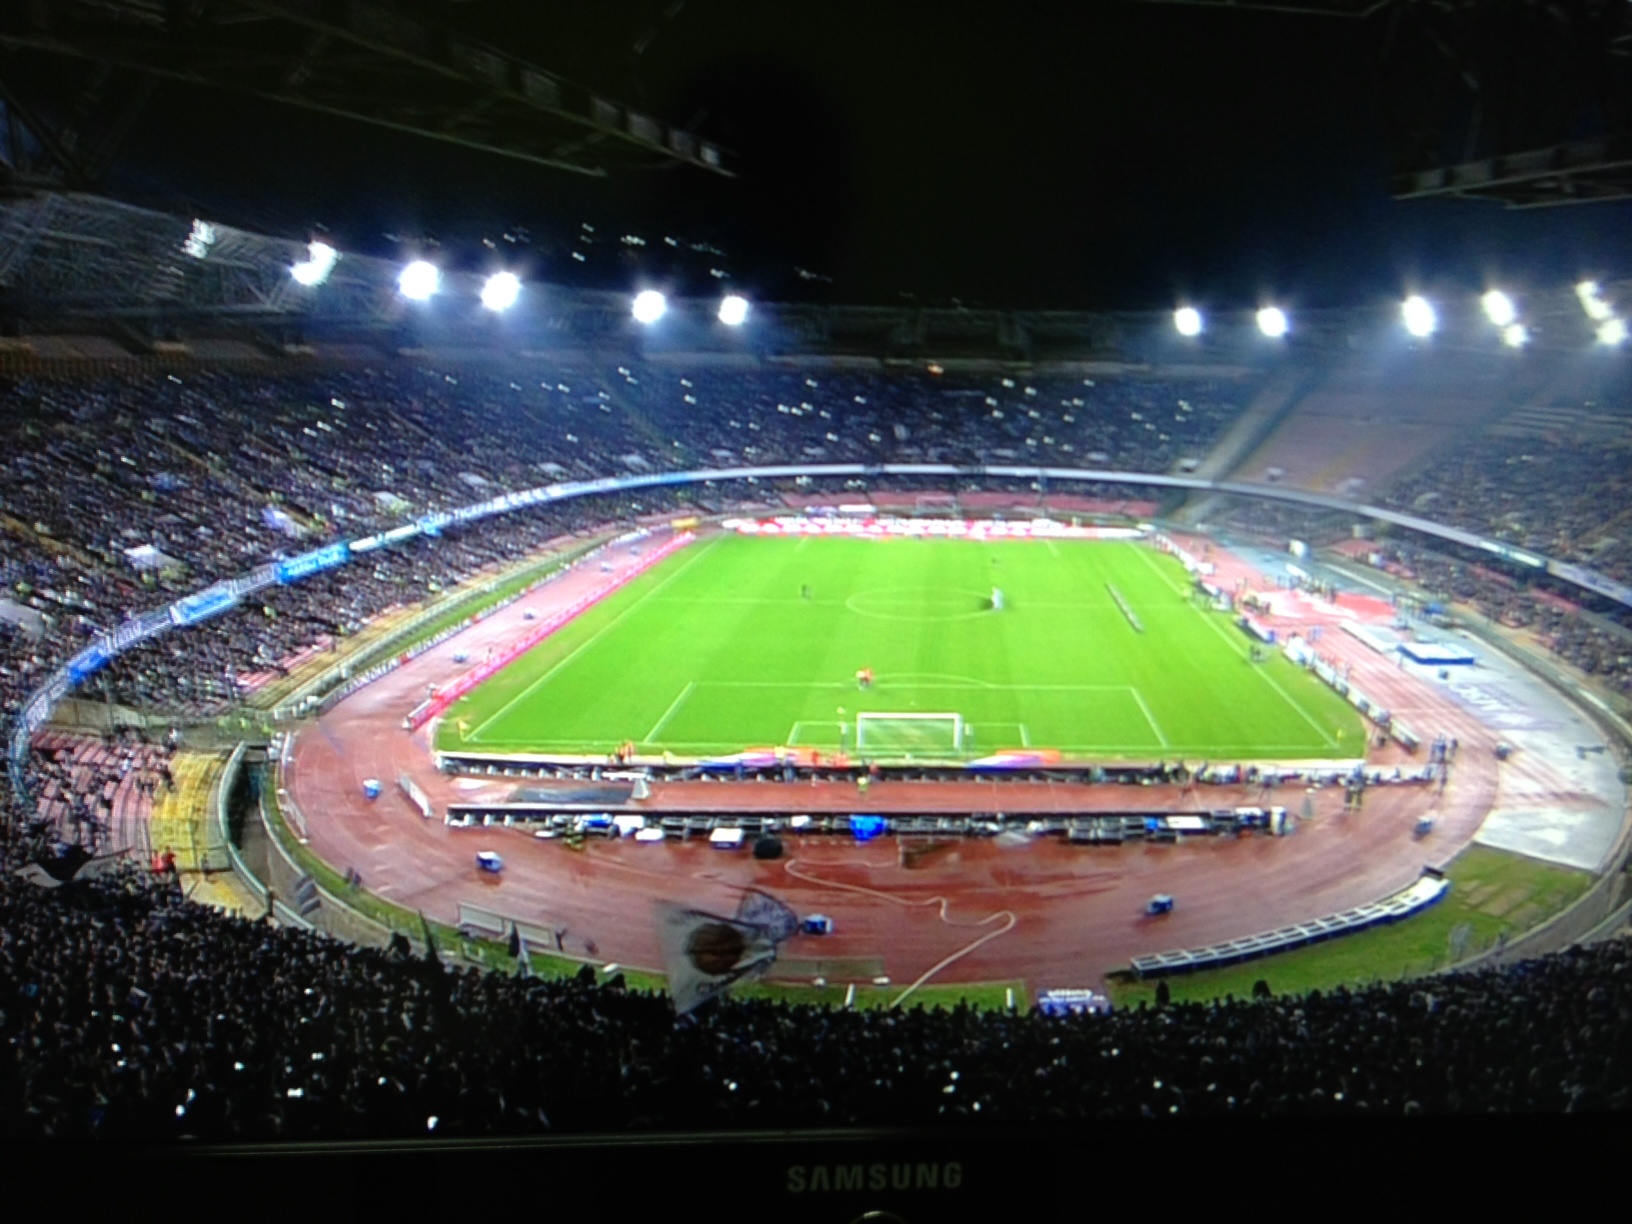  La Polizia di Stato fa il resoconto della sicurezza dopo la partita Napoli – Trabzonspor